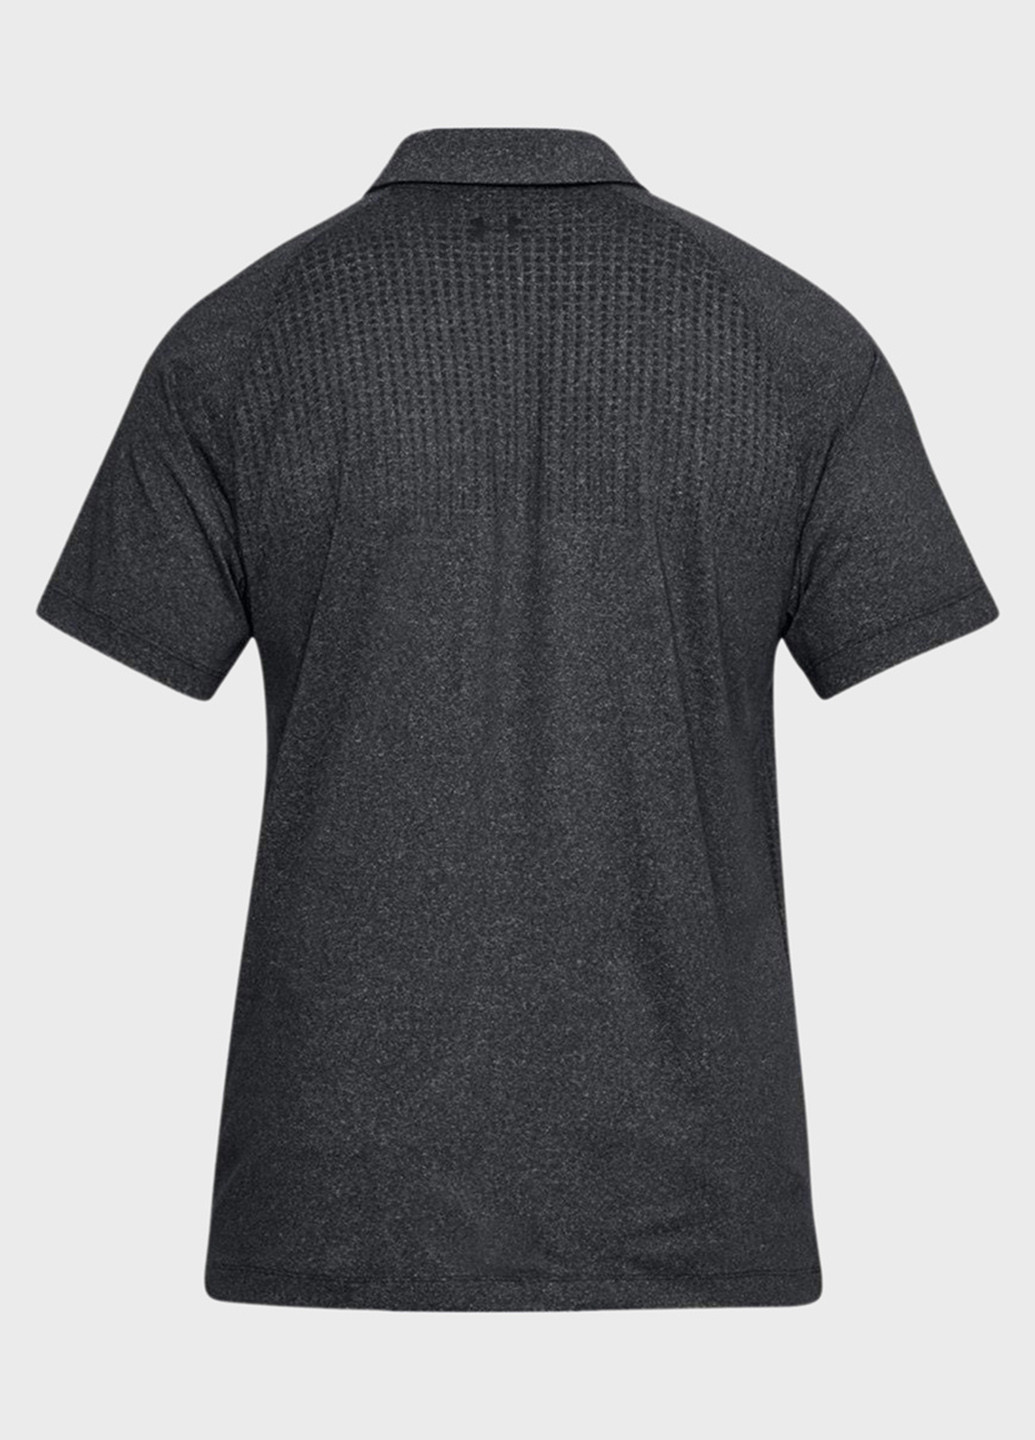 Черная футболка-поло для мужчин Under Armour однотонная